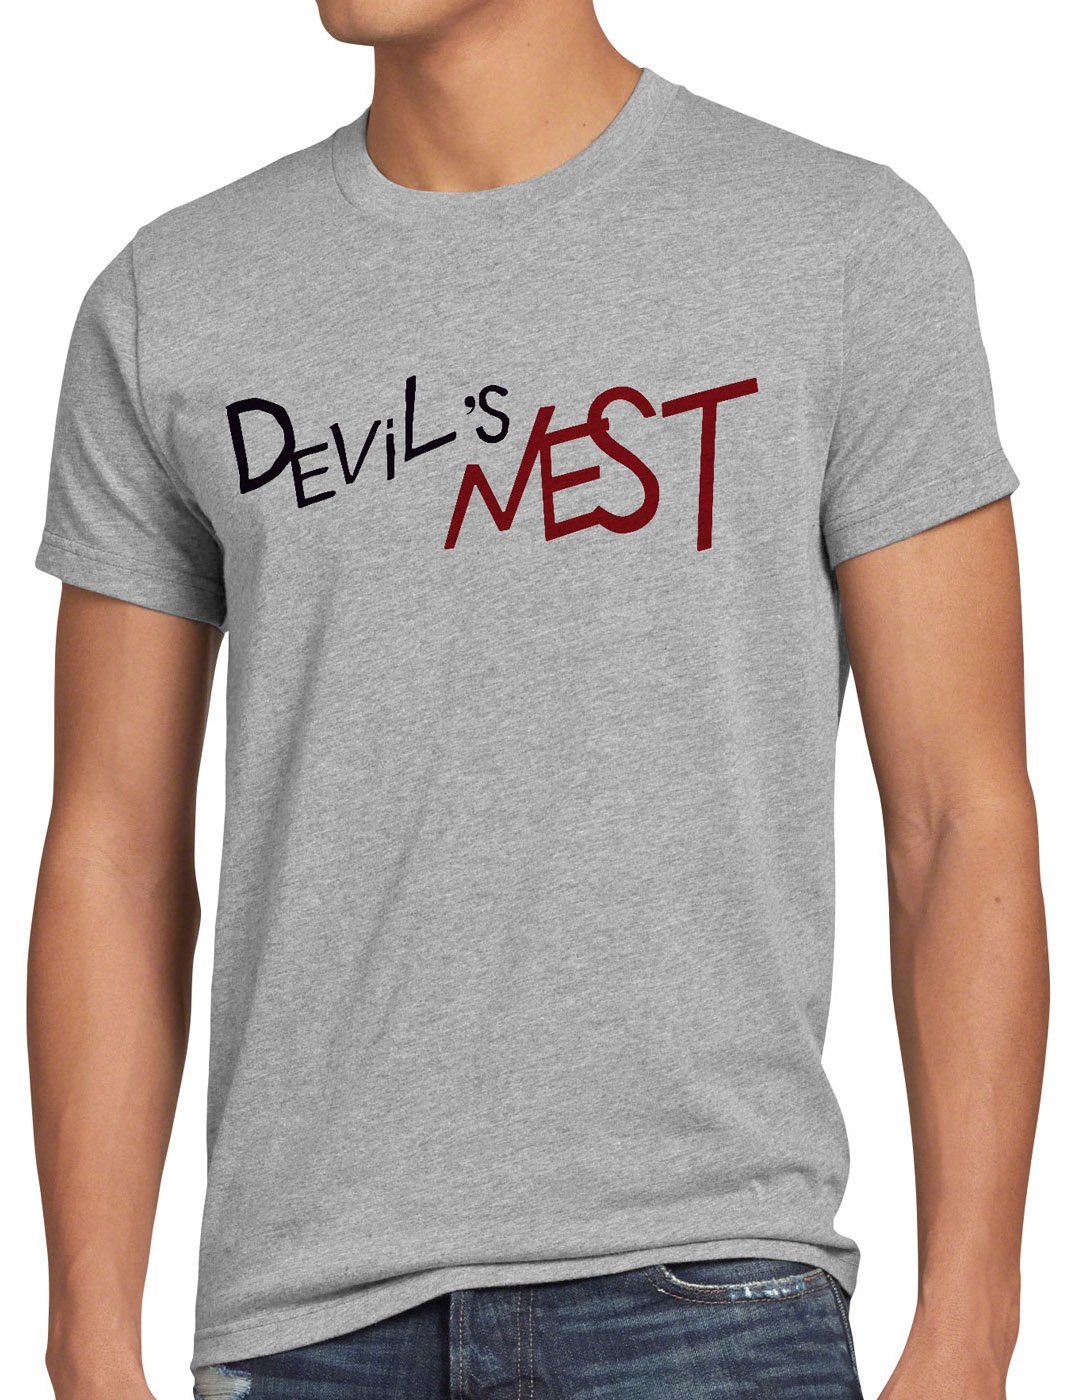 style3 Kostüm Devils Nest Jungen grau Herren Alchemist Cosplay Fan-Shirt Print-Shirt Anime meliert T-Shirt